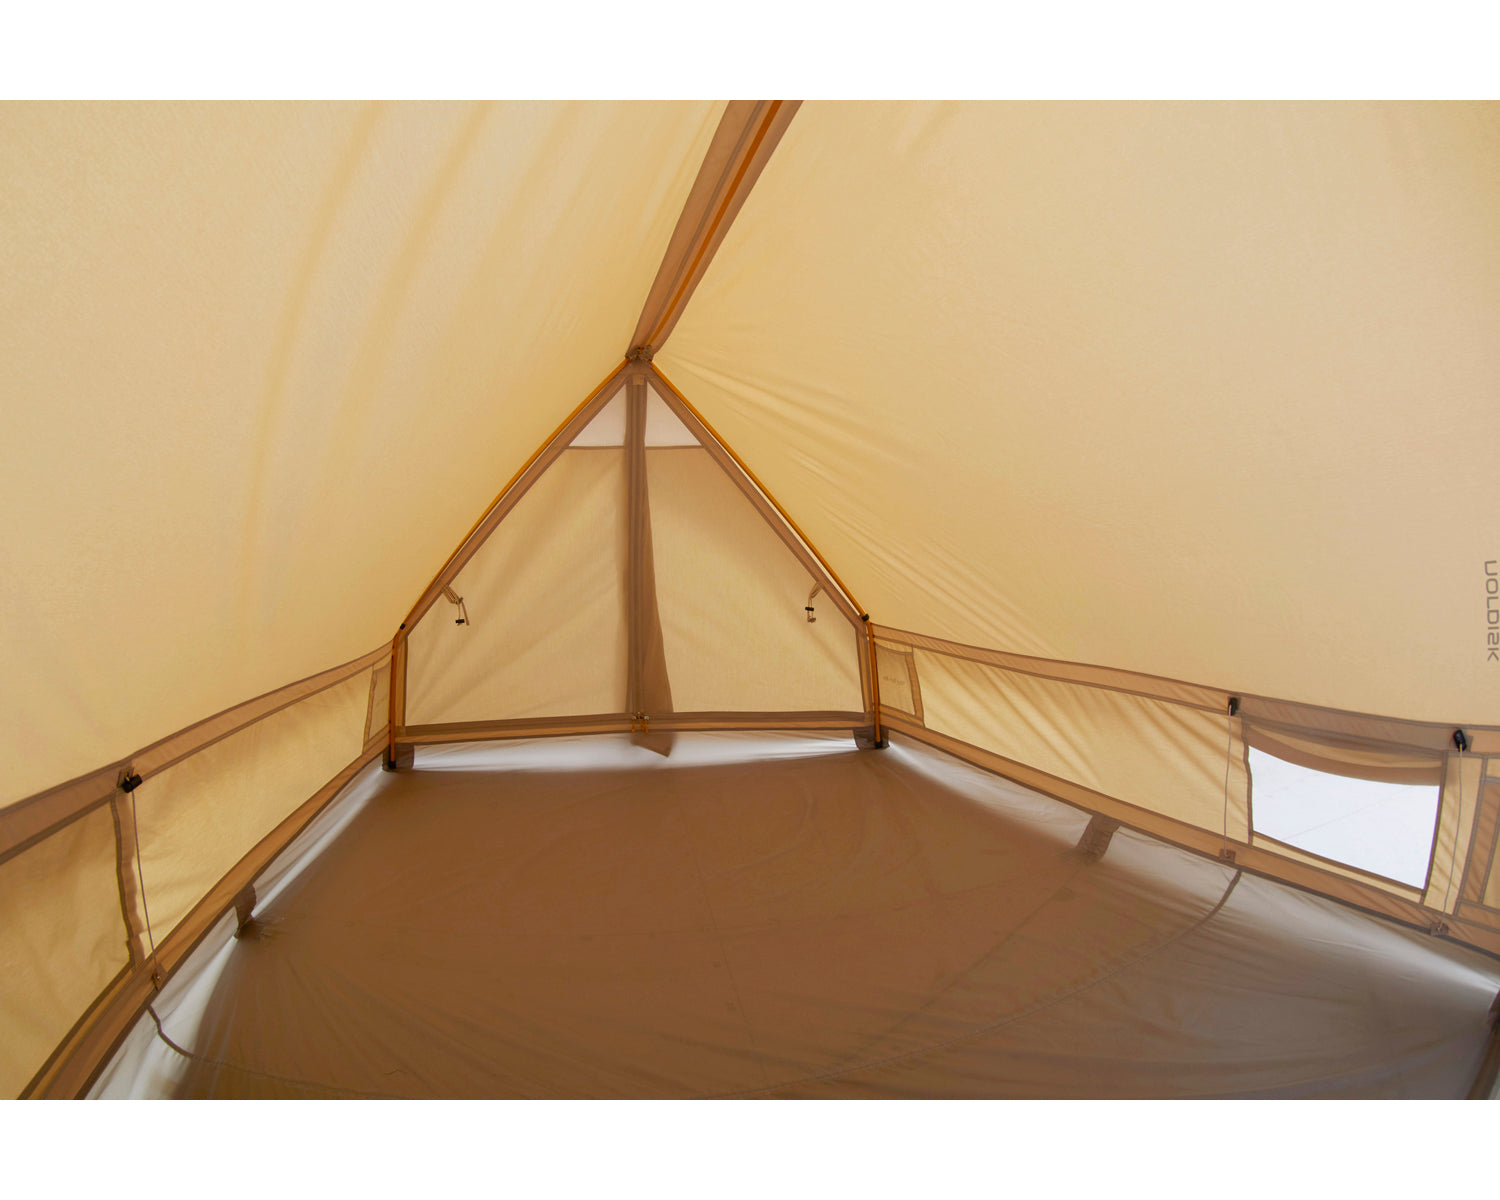 Ydun Tech Mini tent - 2 person - Sand